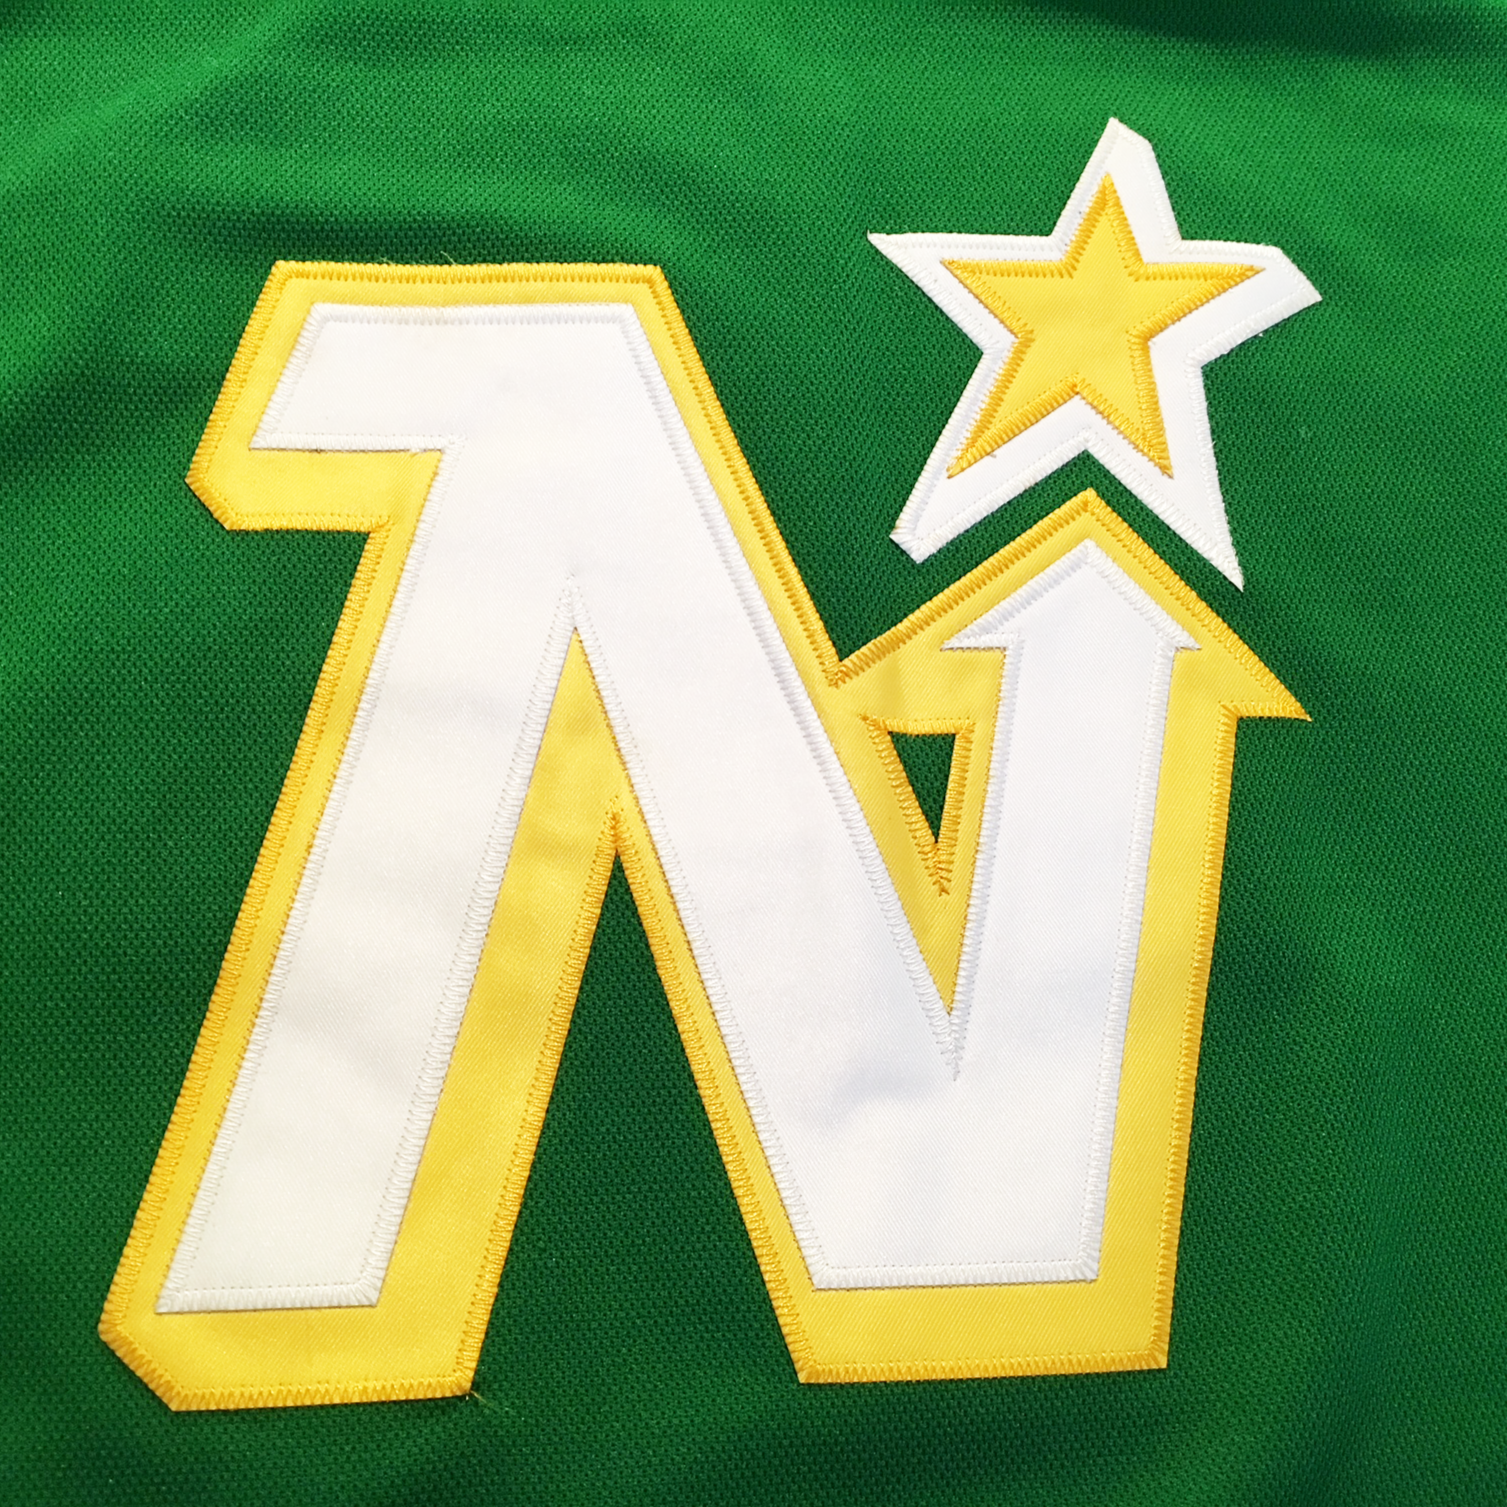 Minnesota North Stars NHL Fan Jerseys for sale